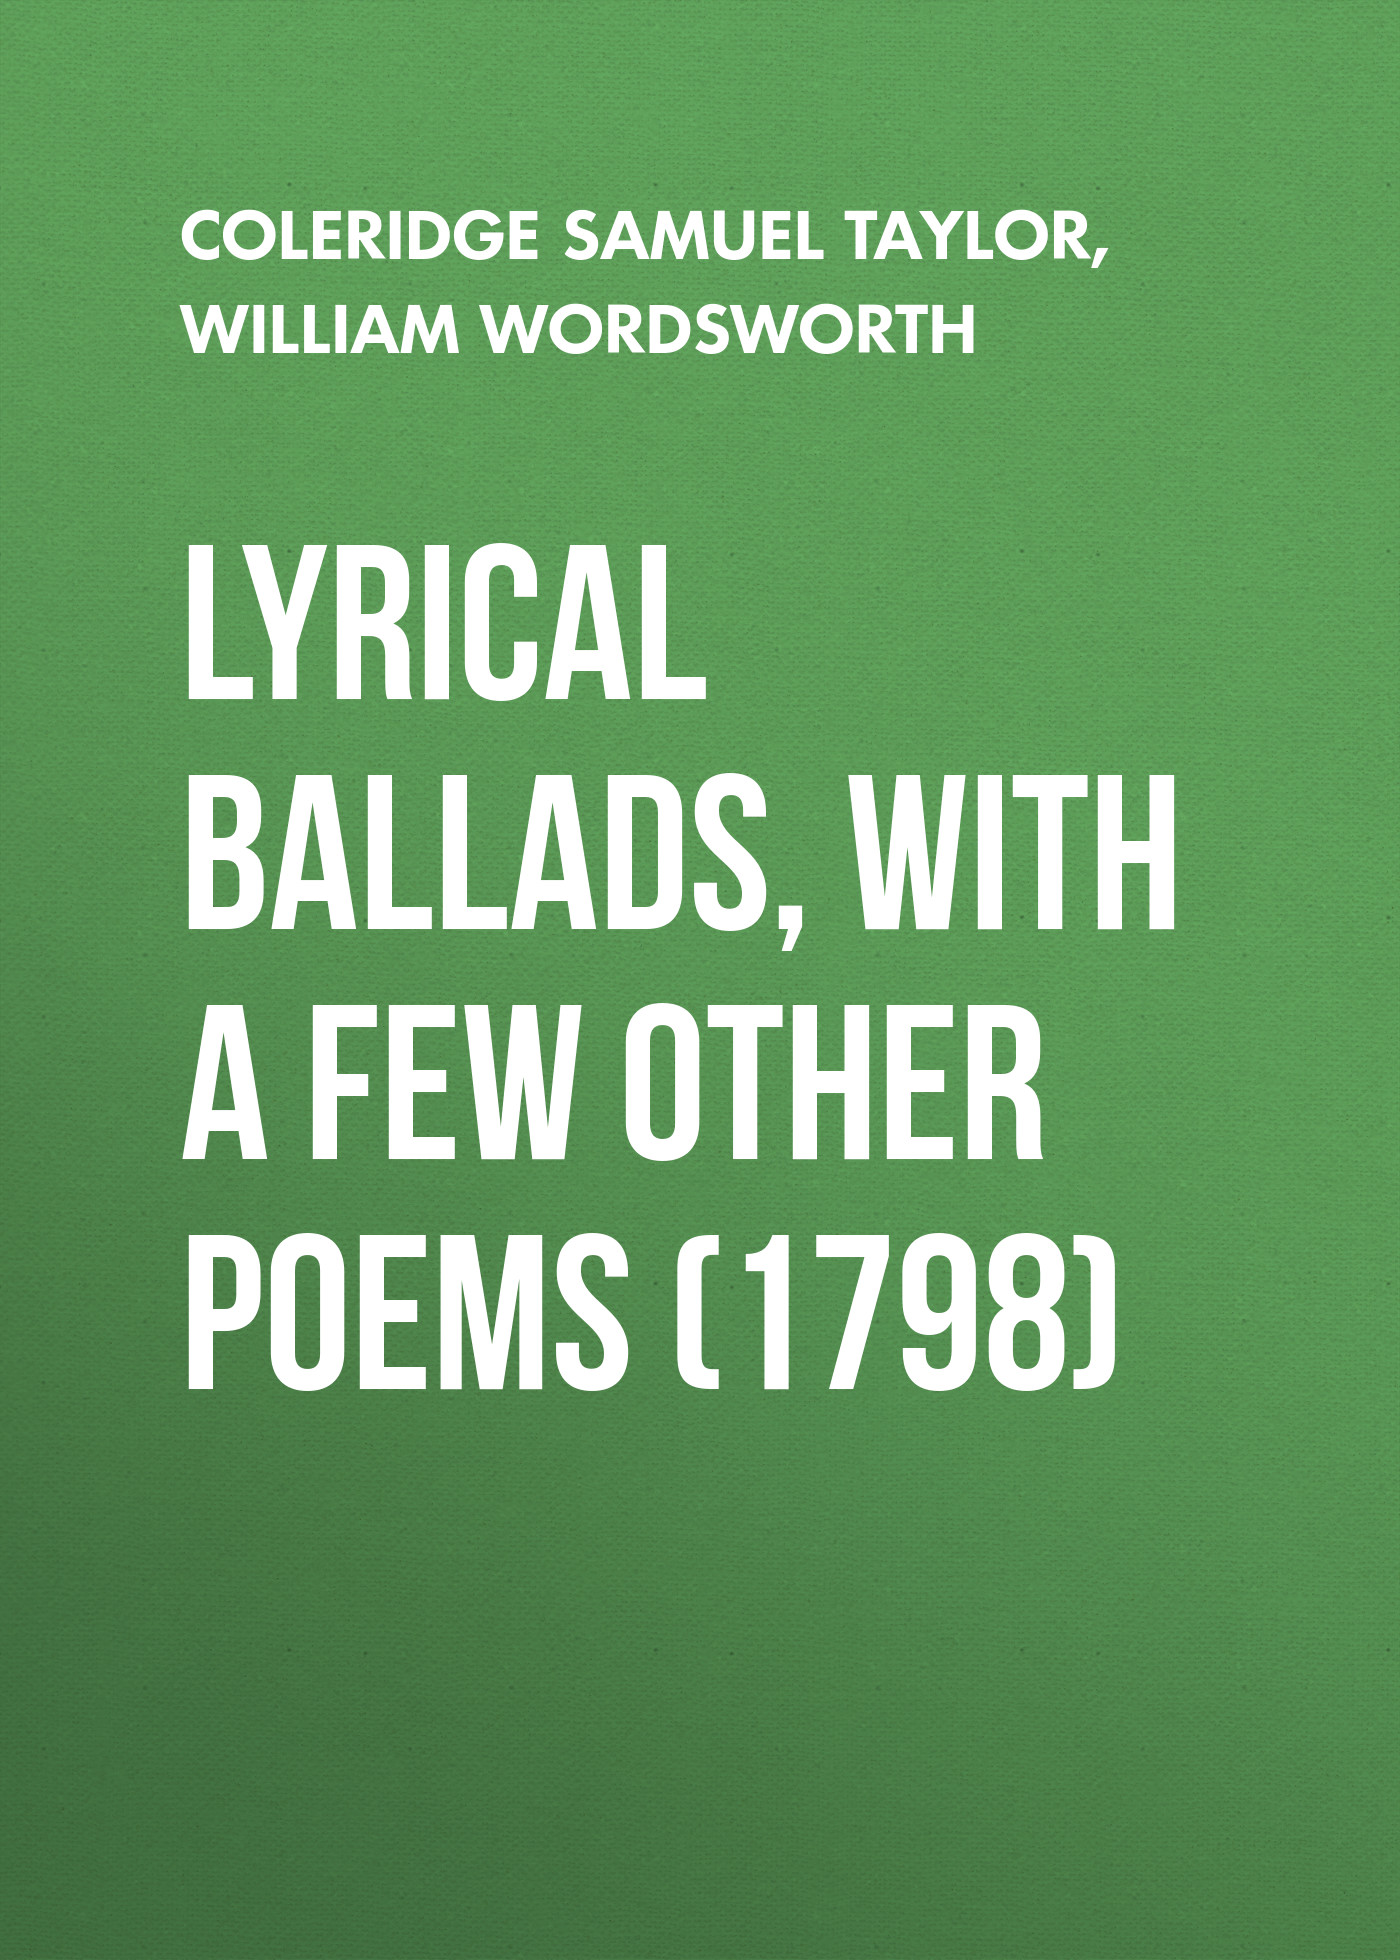 Книга Lyrical Ballads, With a Few Other Poems (1798) из серии , созданная Samuel Coleridge, William Wordsworth, может относится к жанру Литература 18 века, Литература 19 века, Поэзия, Зарубежная классика, Зарубежные стихи. Стоимость электронной книги Lyrical Ballads, With a Few Other Poems (1798) с идентификатором 25558804 составляет 0 руб.